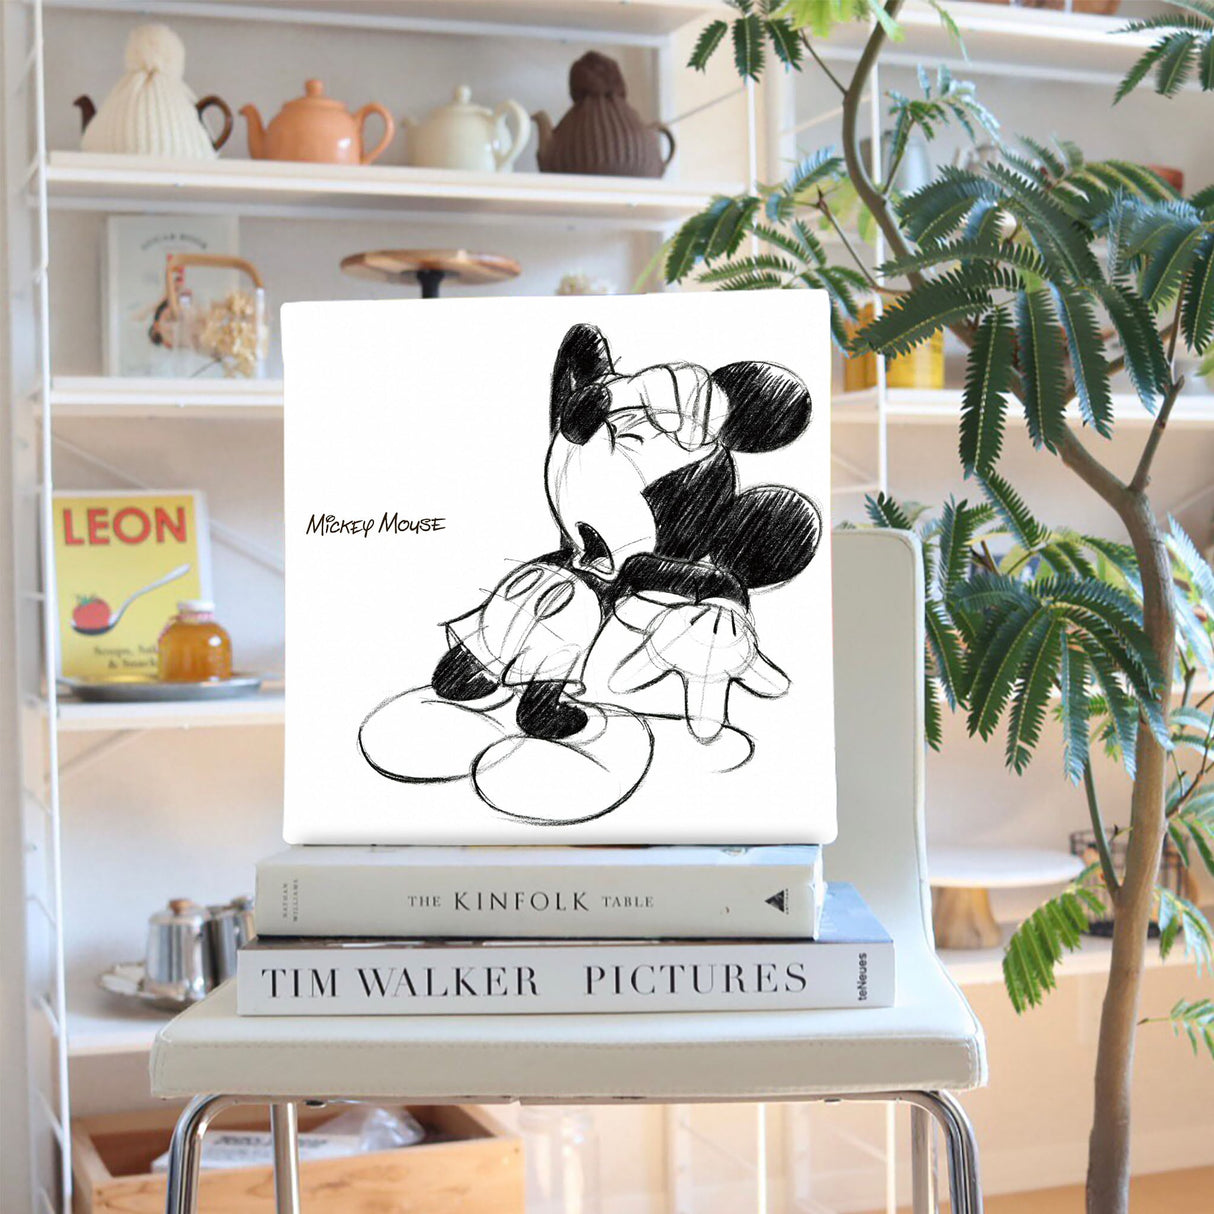 ミッキーのファブリックパネル Disney アート dsn-0006